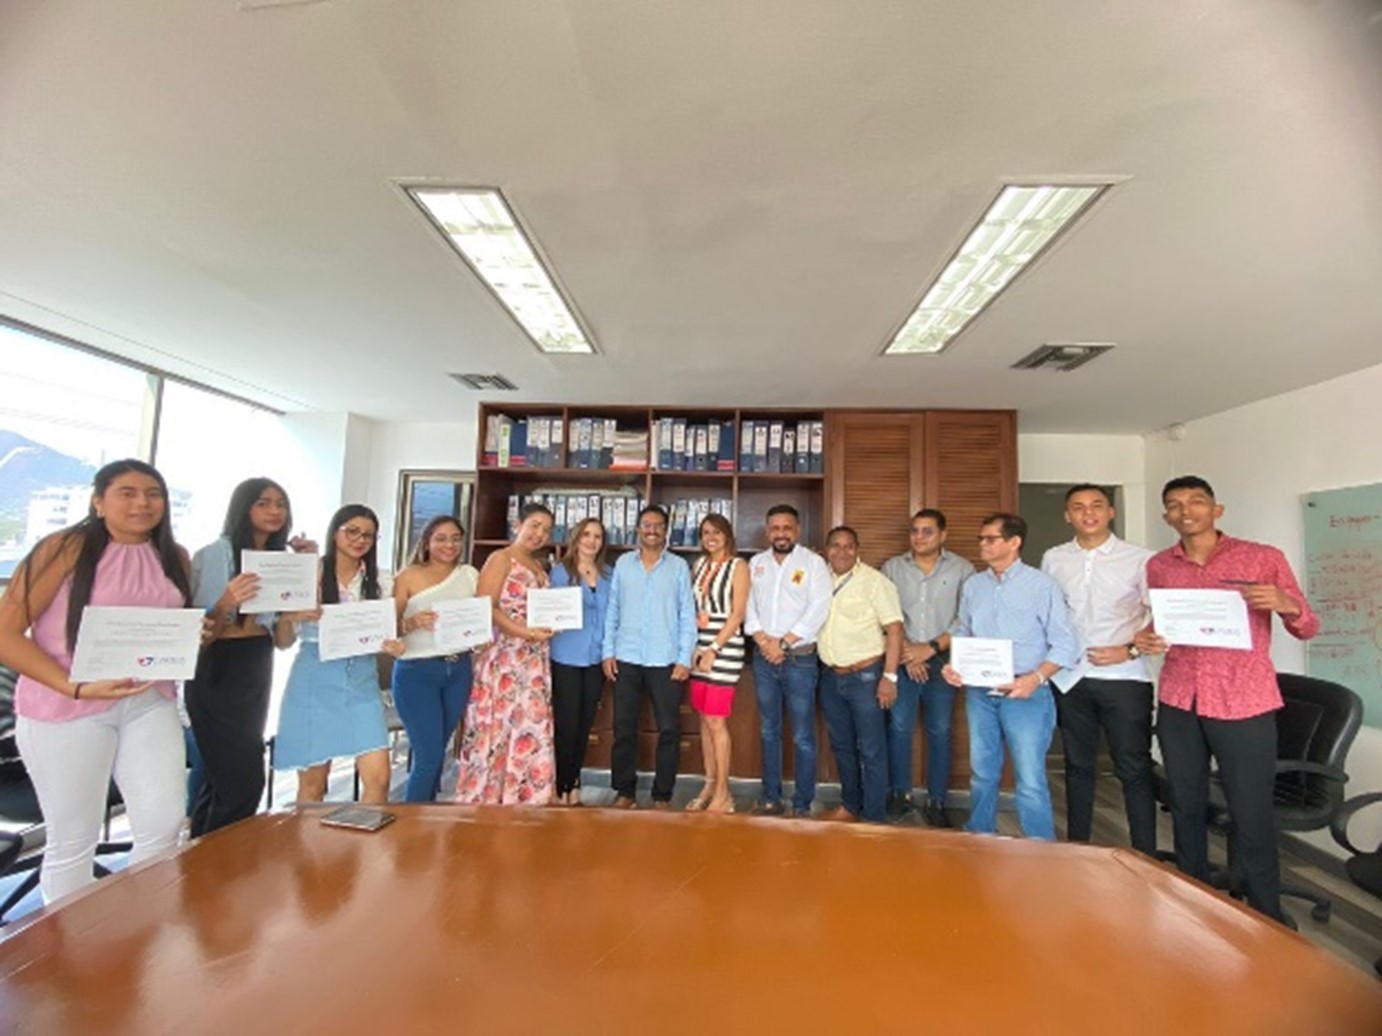 Estudiantes reciben certificación de Coalición Comunitaria Antidrogas de EE.UU